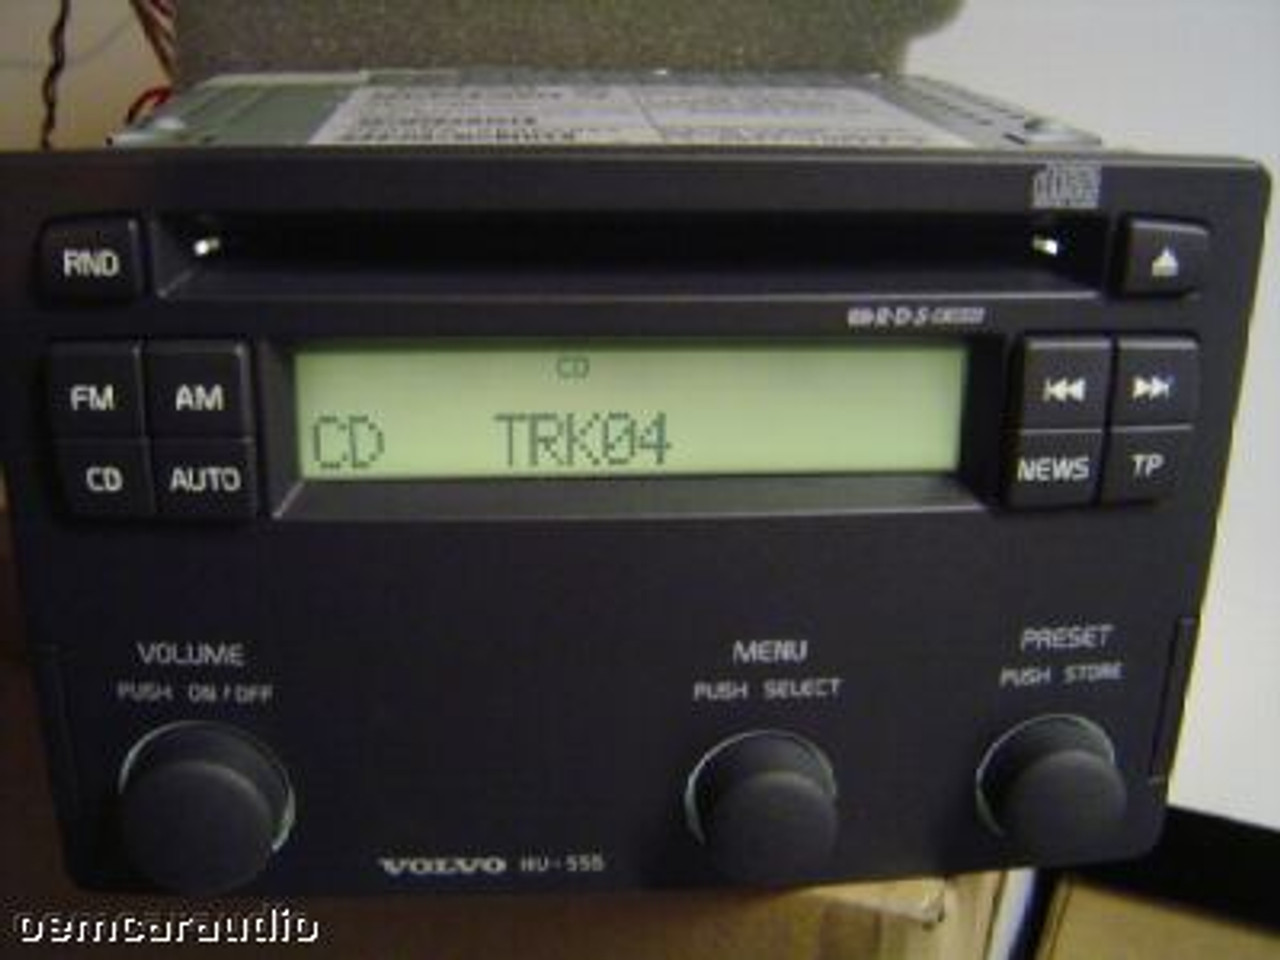 HU555 01 04 Volvo S60 V70 CD Player Radio Stereo Tape Player